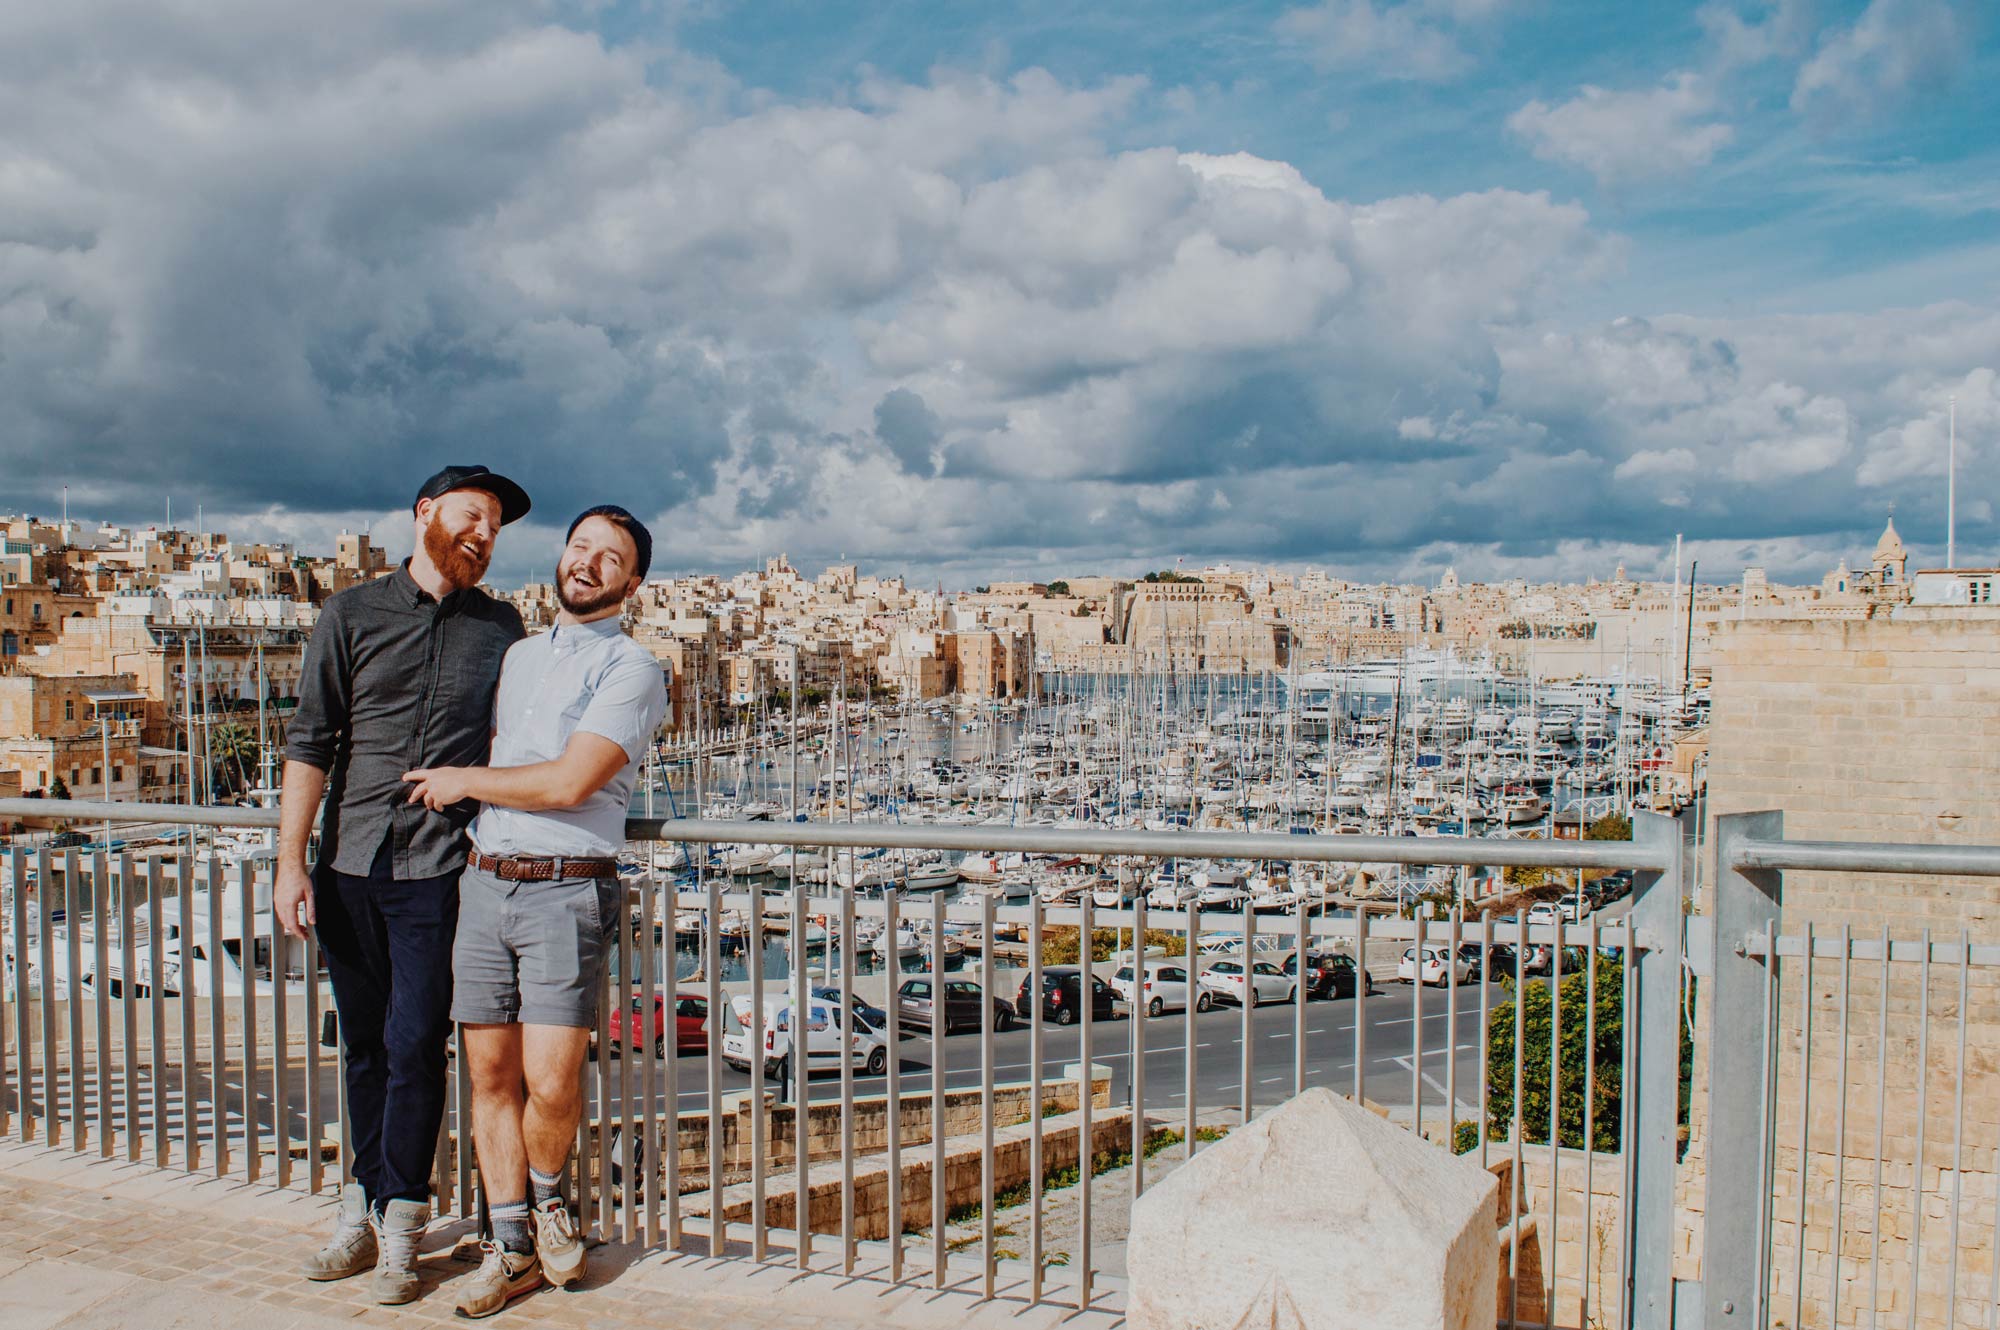 How LGBTQ+ and gay-friendly is Malta? © Coupleofmen.com